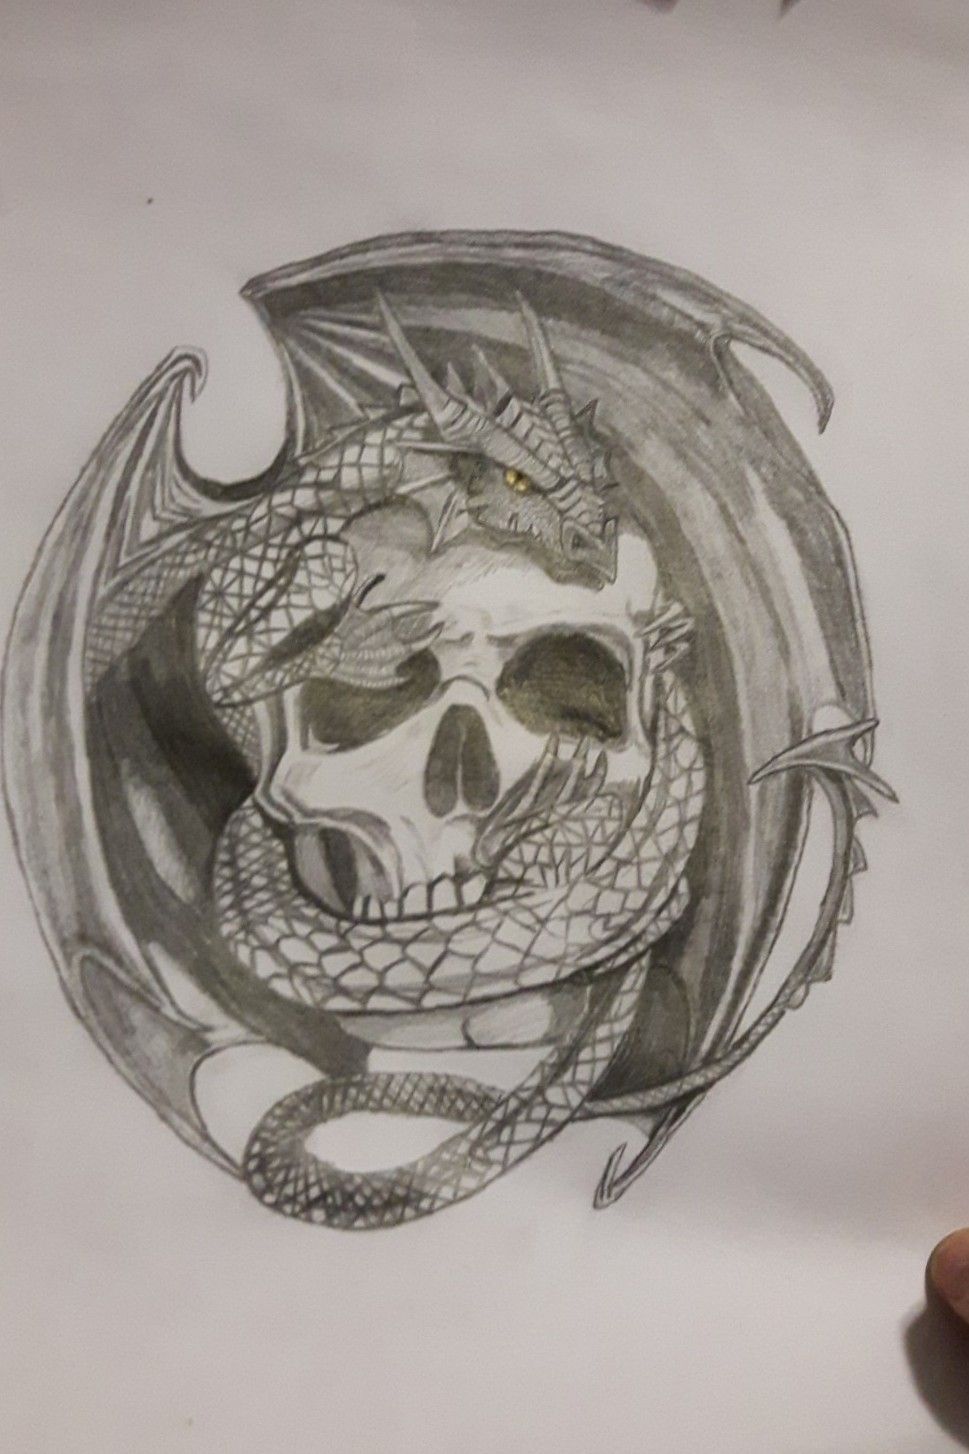 Japanese Dragon and Skull Tattoo Design by magentamorbid666 on DeviantArt